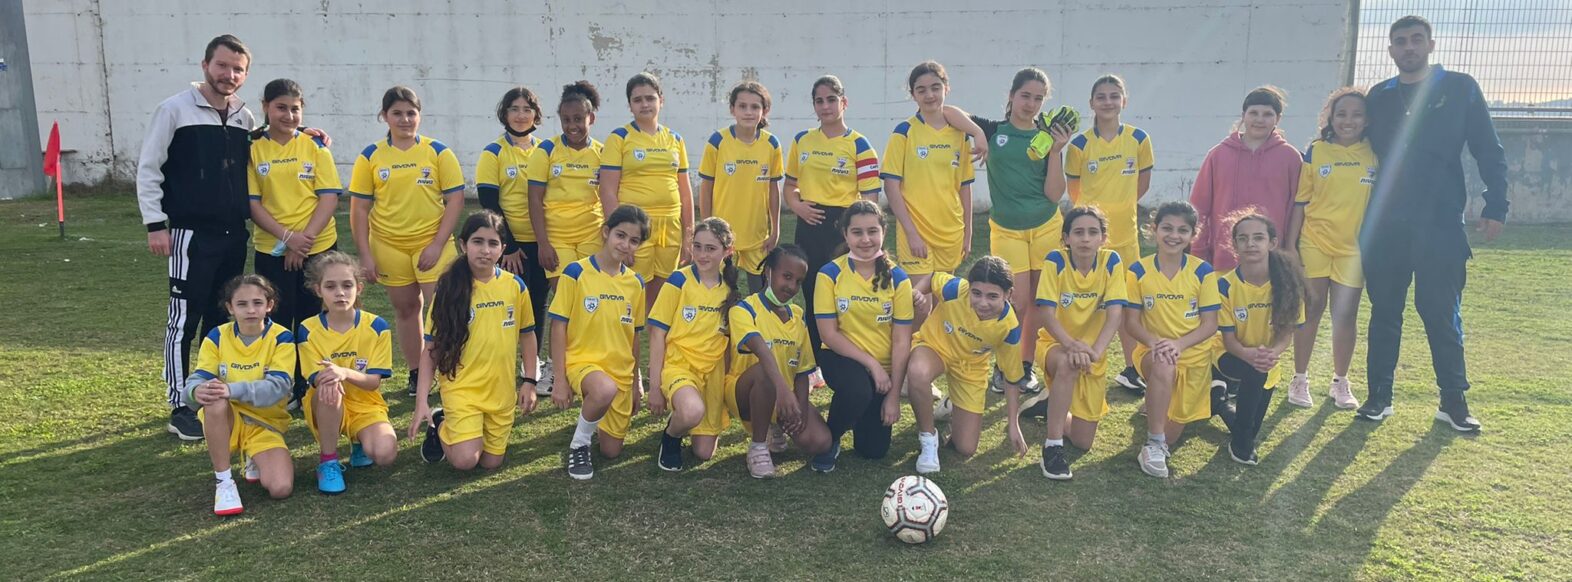 קבוצת כדורגל לבנות של בית הספר “ביאליק”  מקריית ביאליק זכתה במקום הראשון בטורניר מחוז צפון